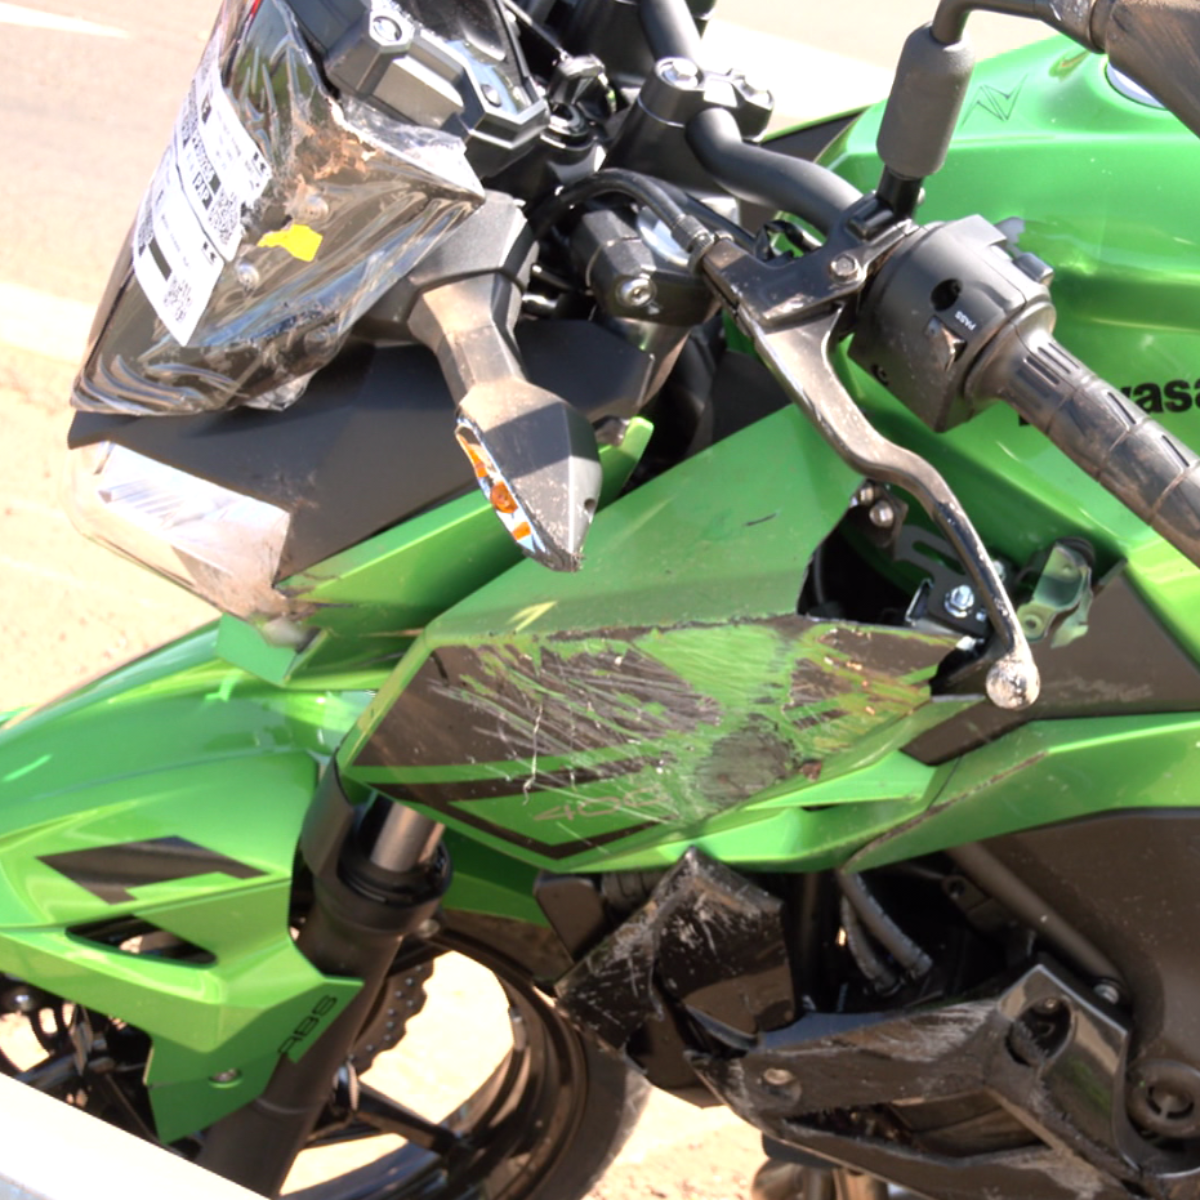  Motociclista se envolve em acidente na PR-445 